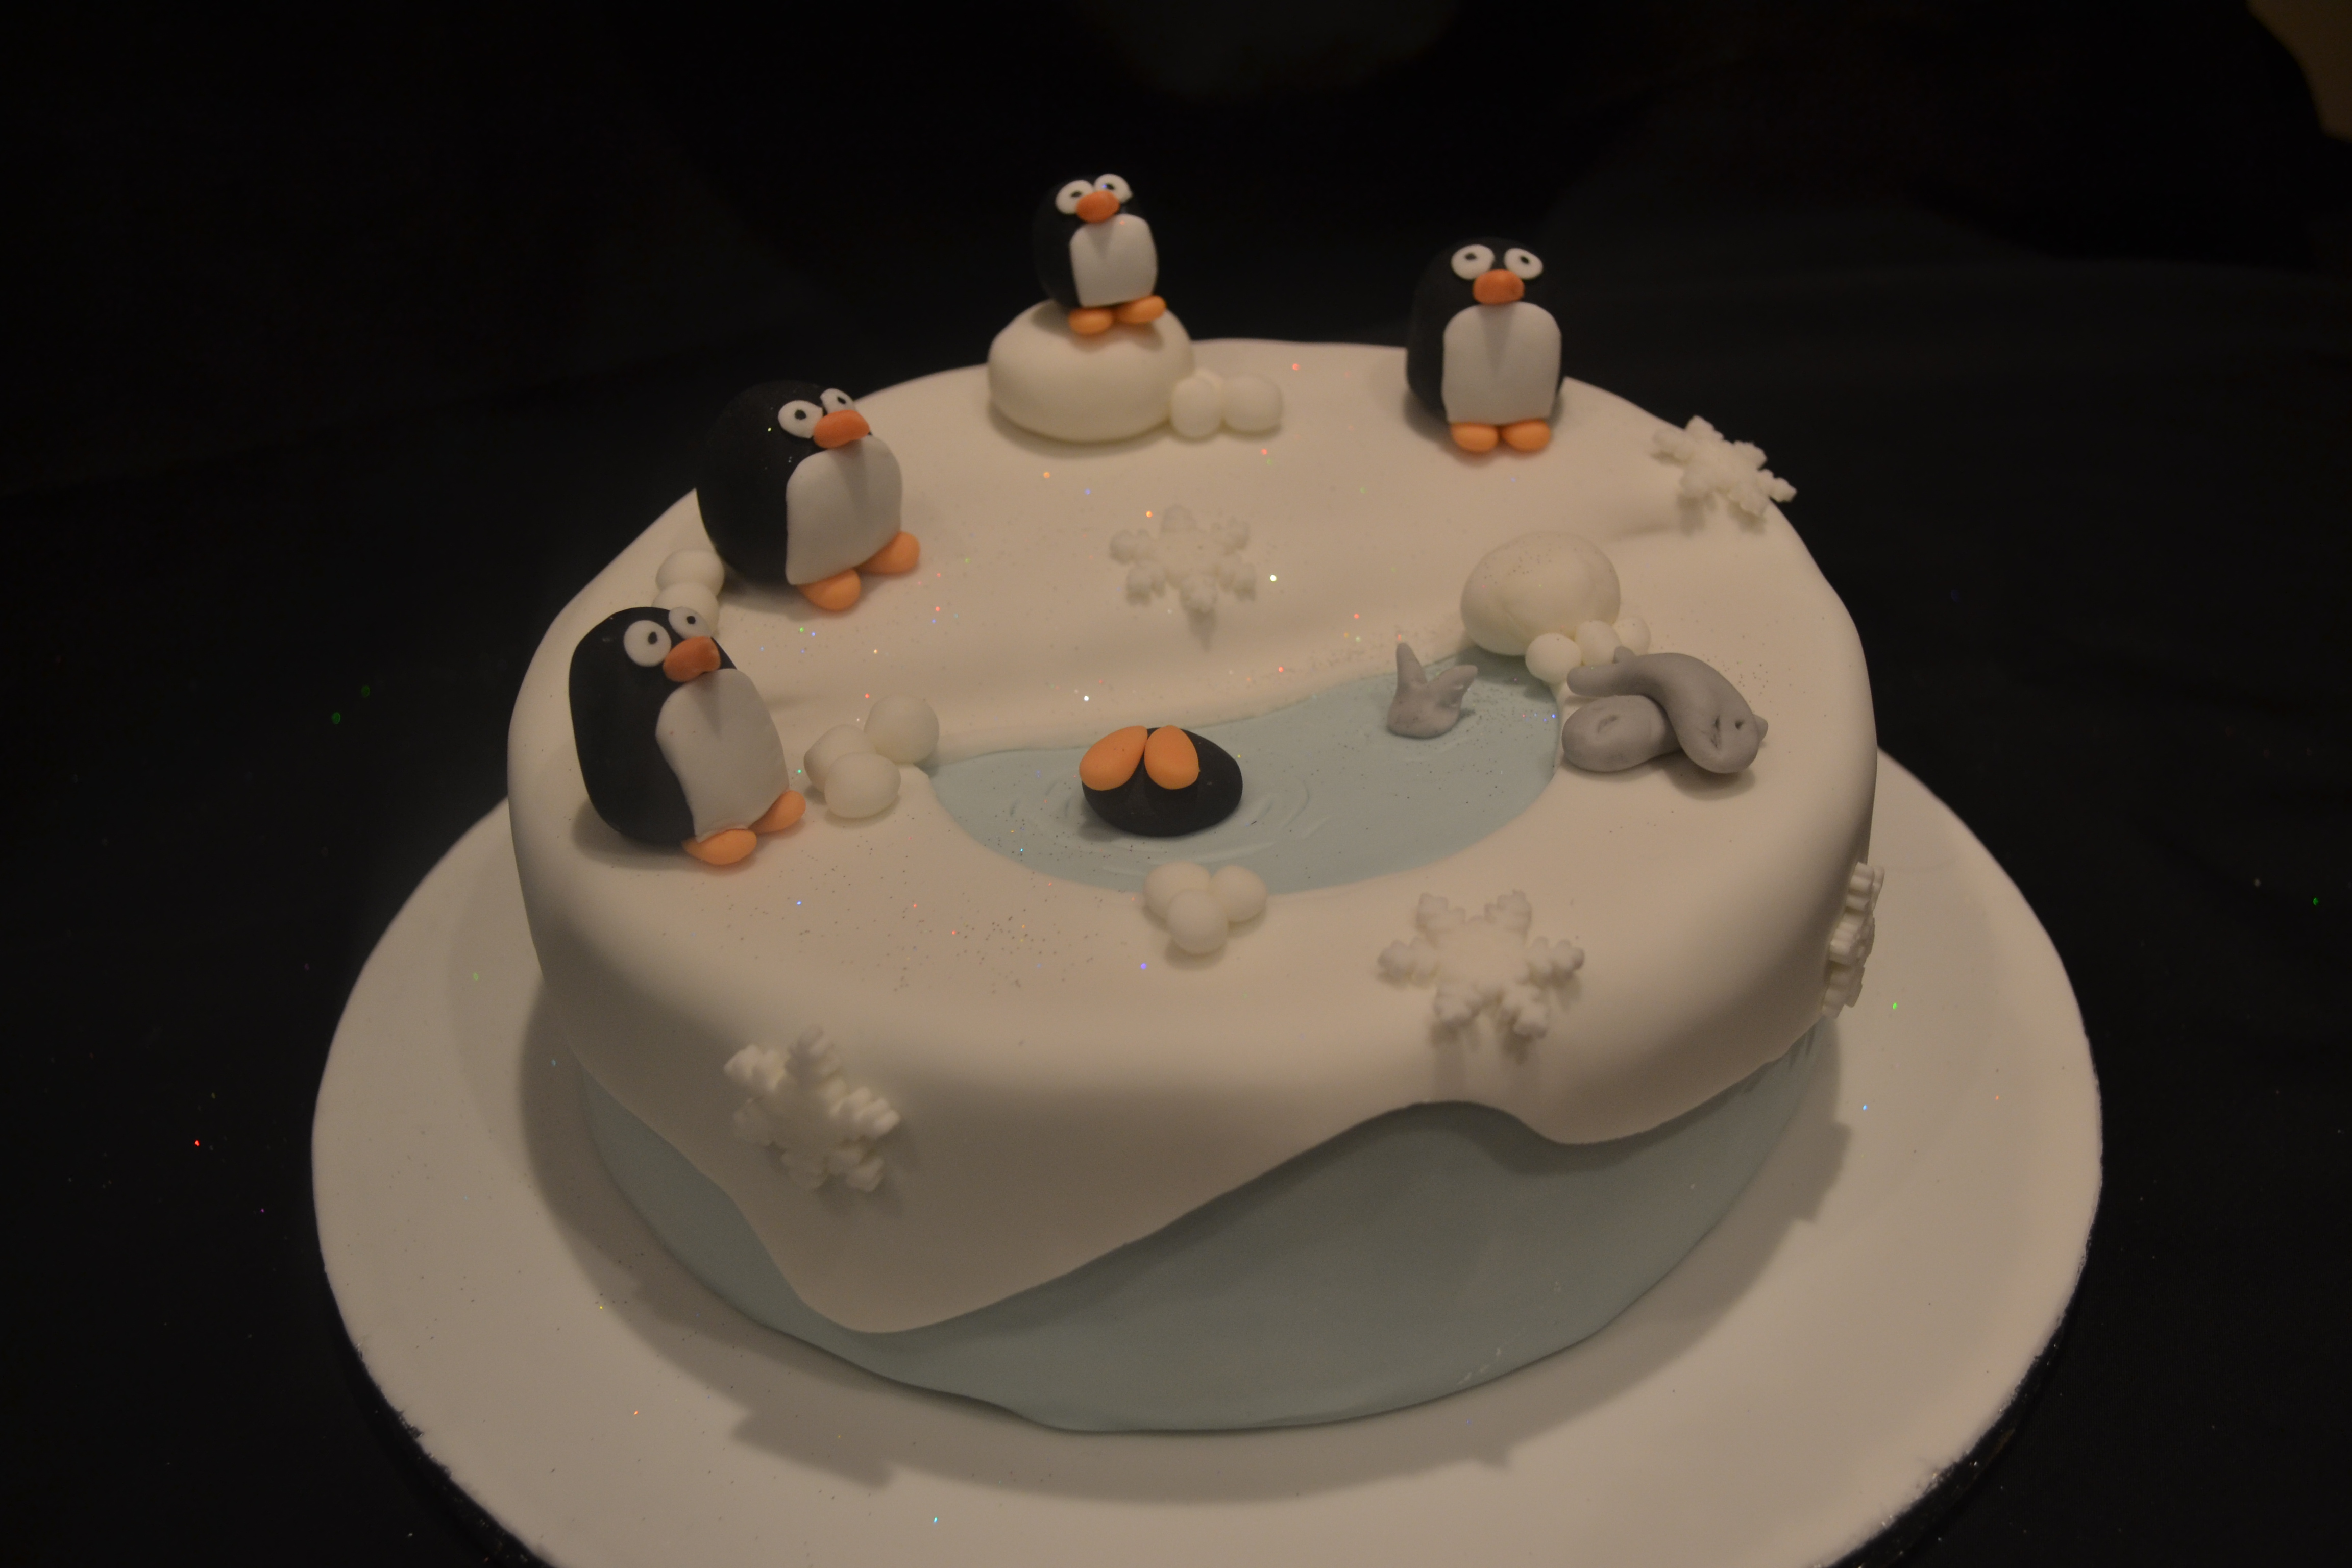 Penguin Christmas Cake